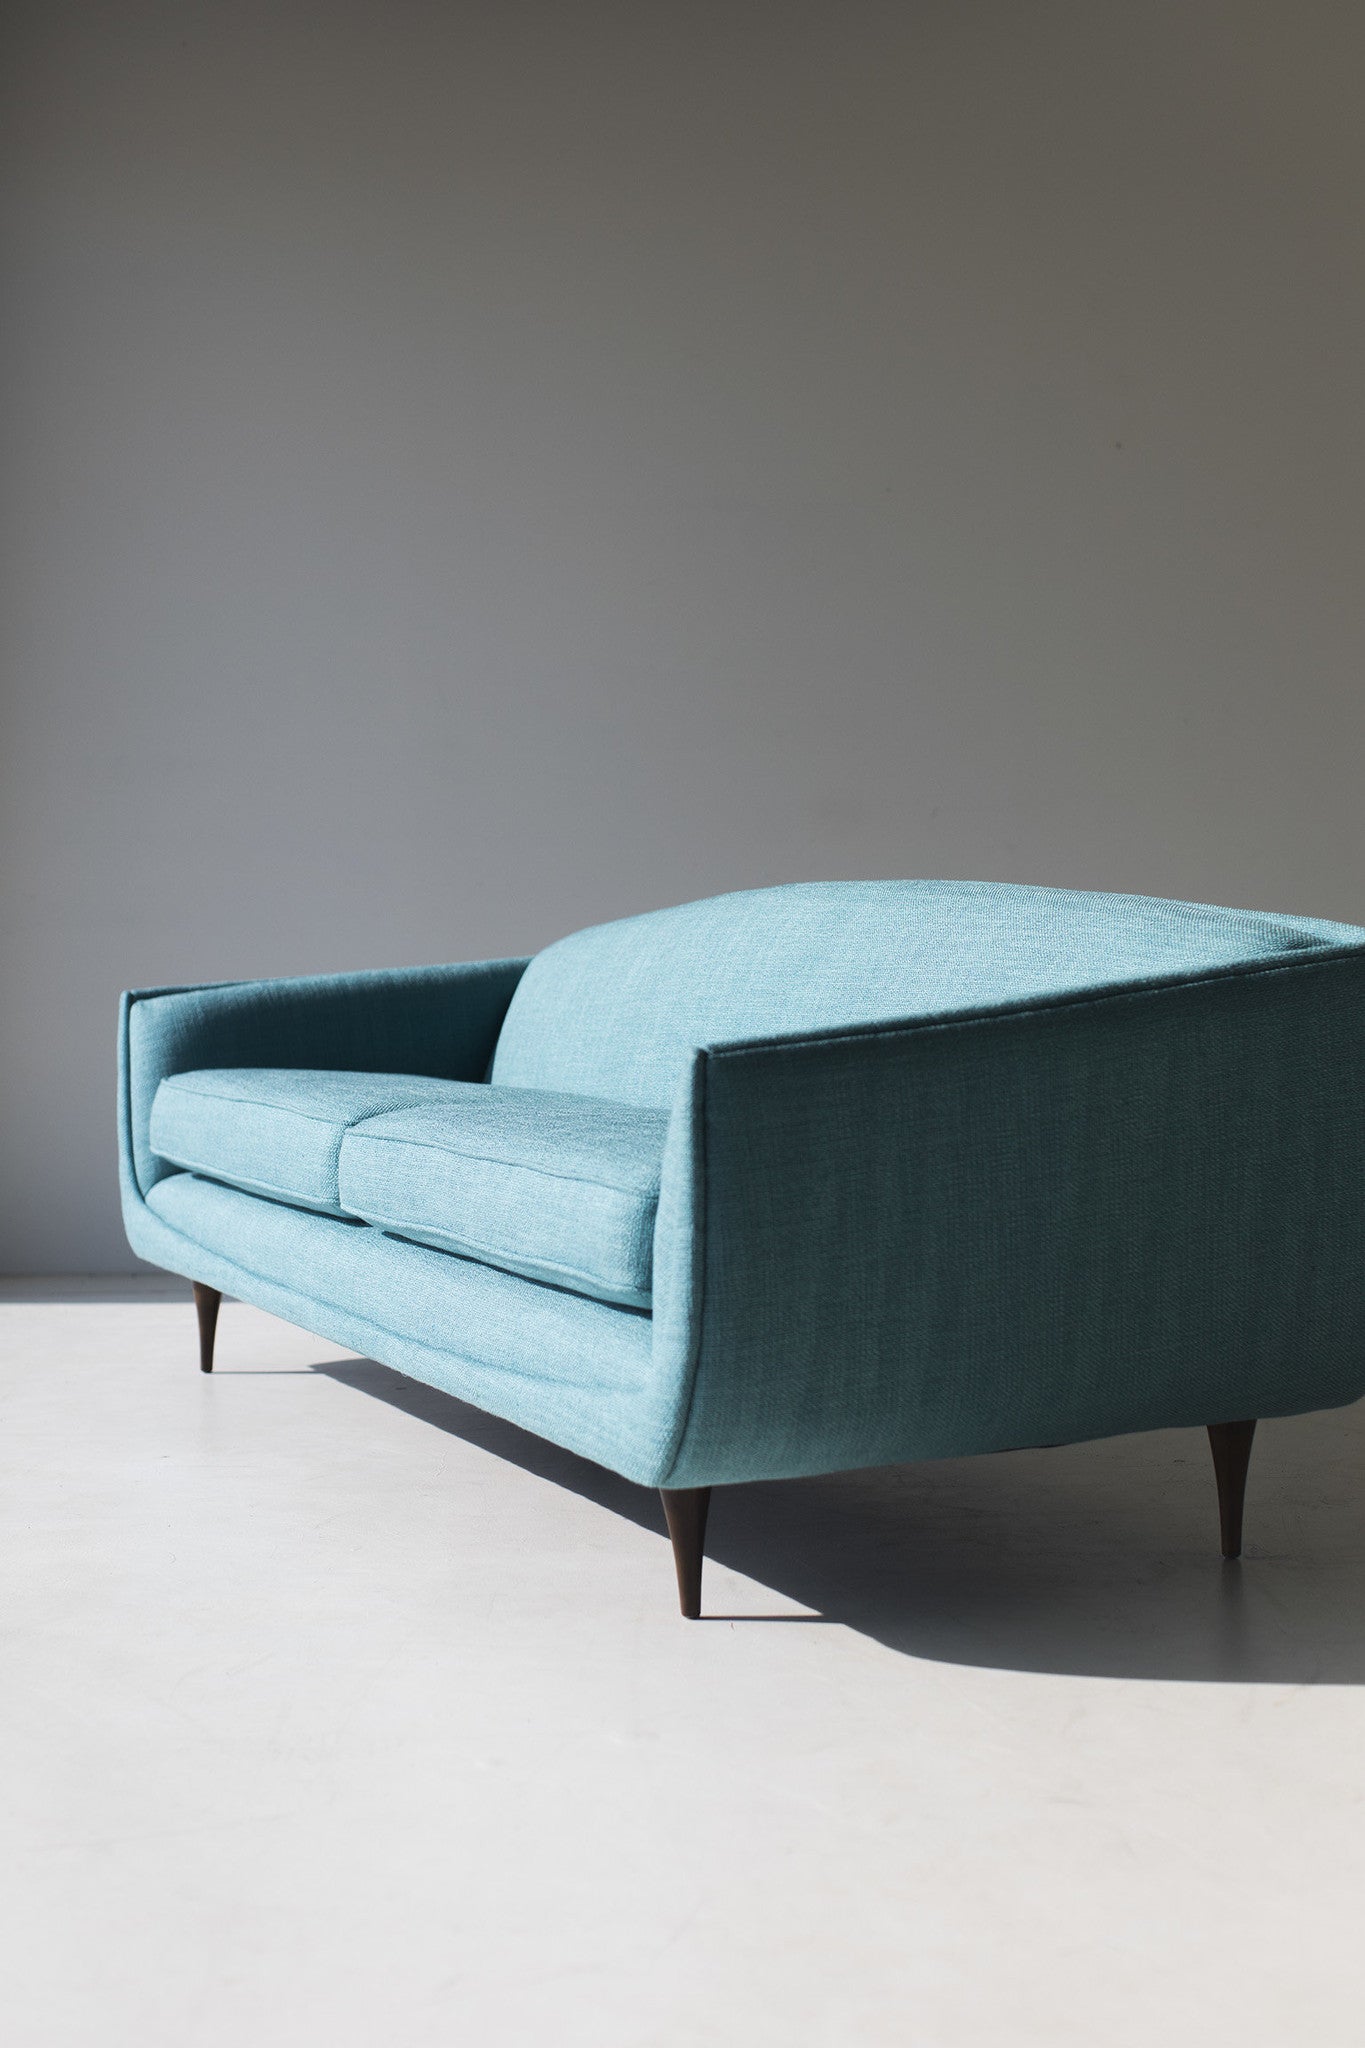 Selig-sofa-designer-attributed-William-Hinn-09